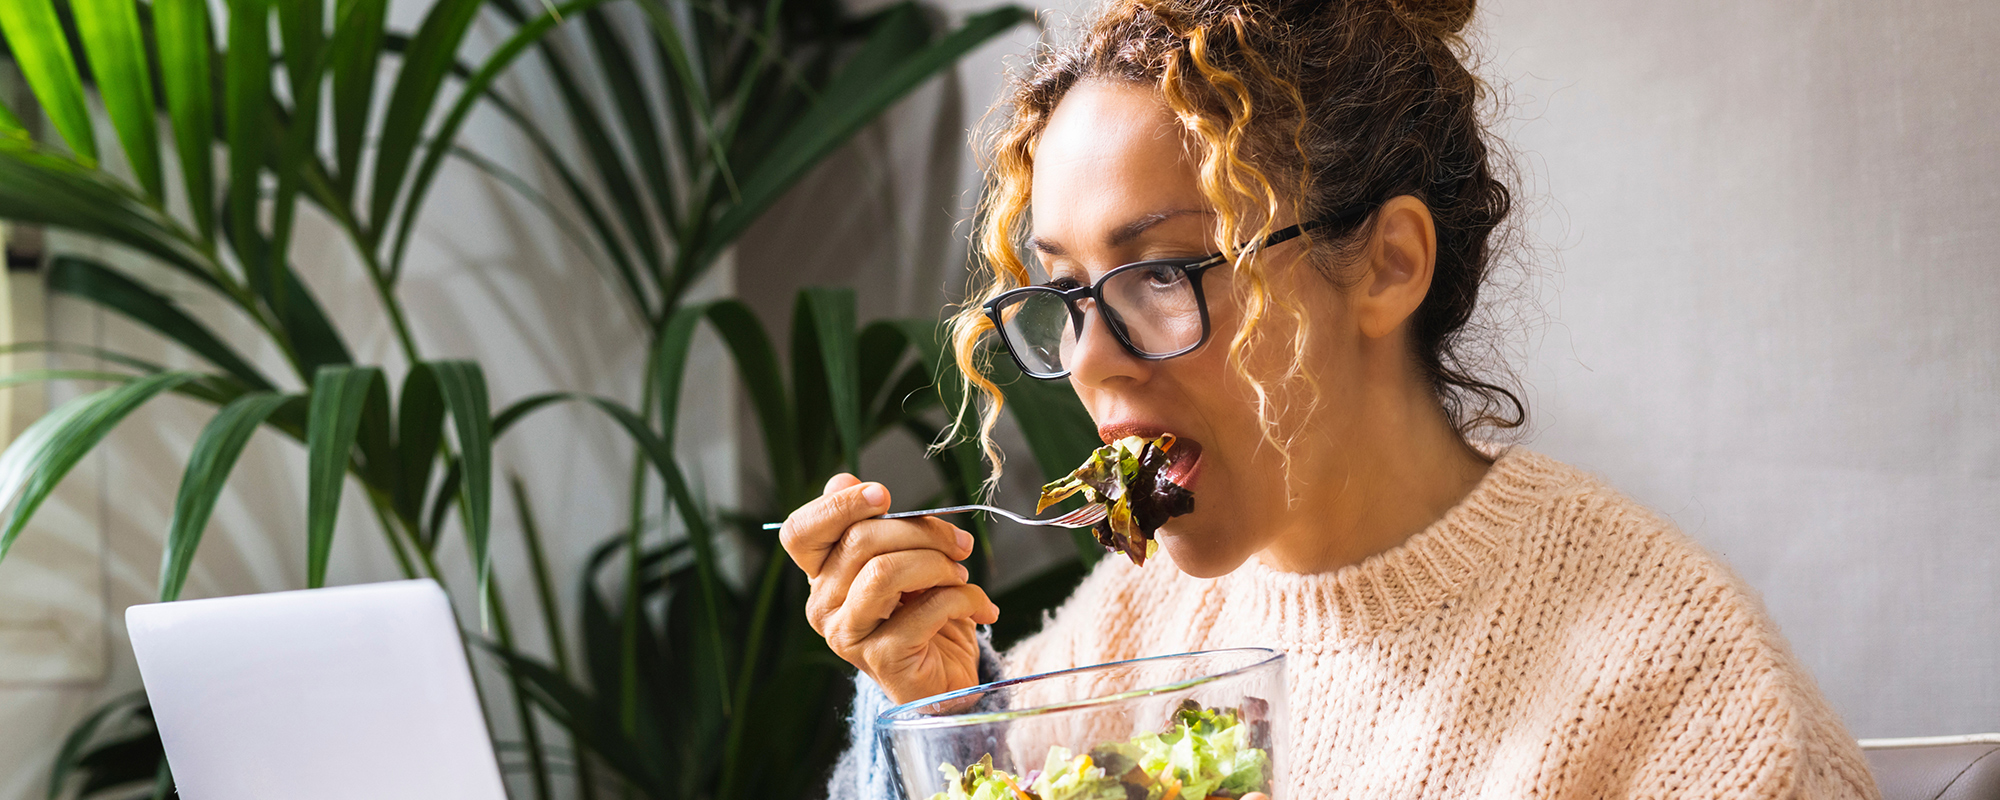 junge Frau mit blonden, hochgesteckten Locken und schwarzer Hornbrille sitzt vor PC und isst Salat aus einer Glasschüssel